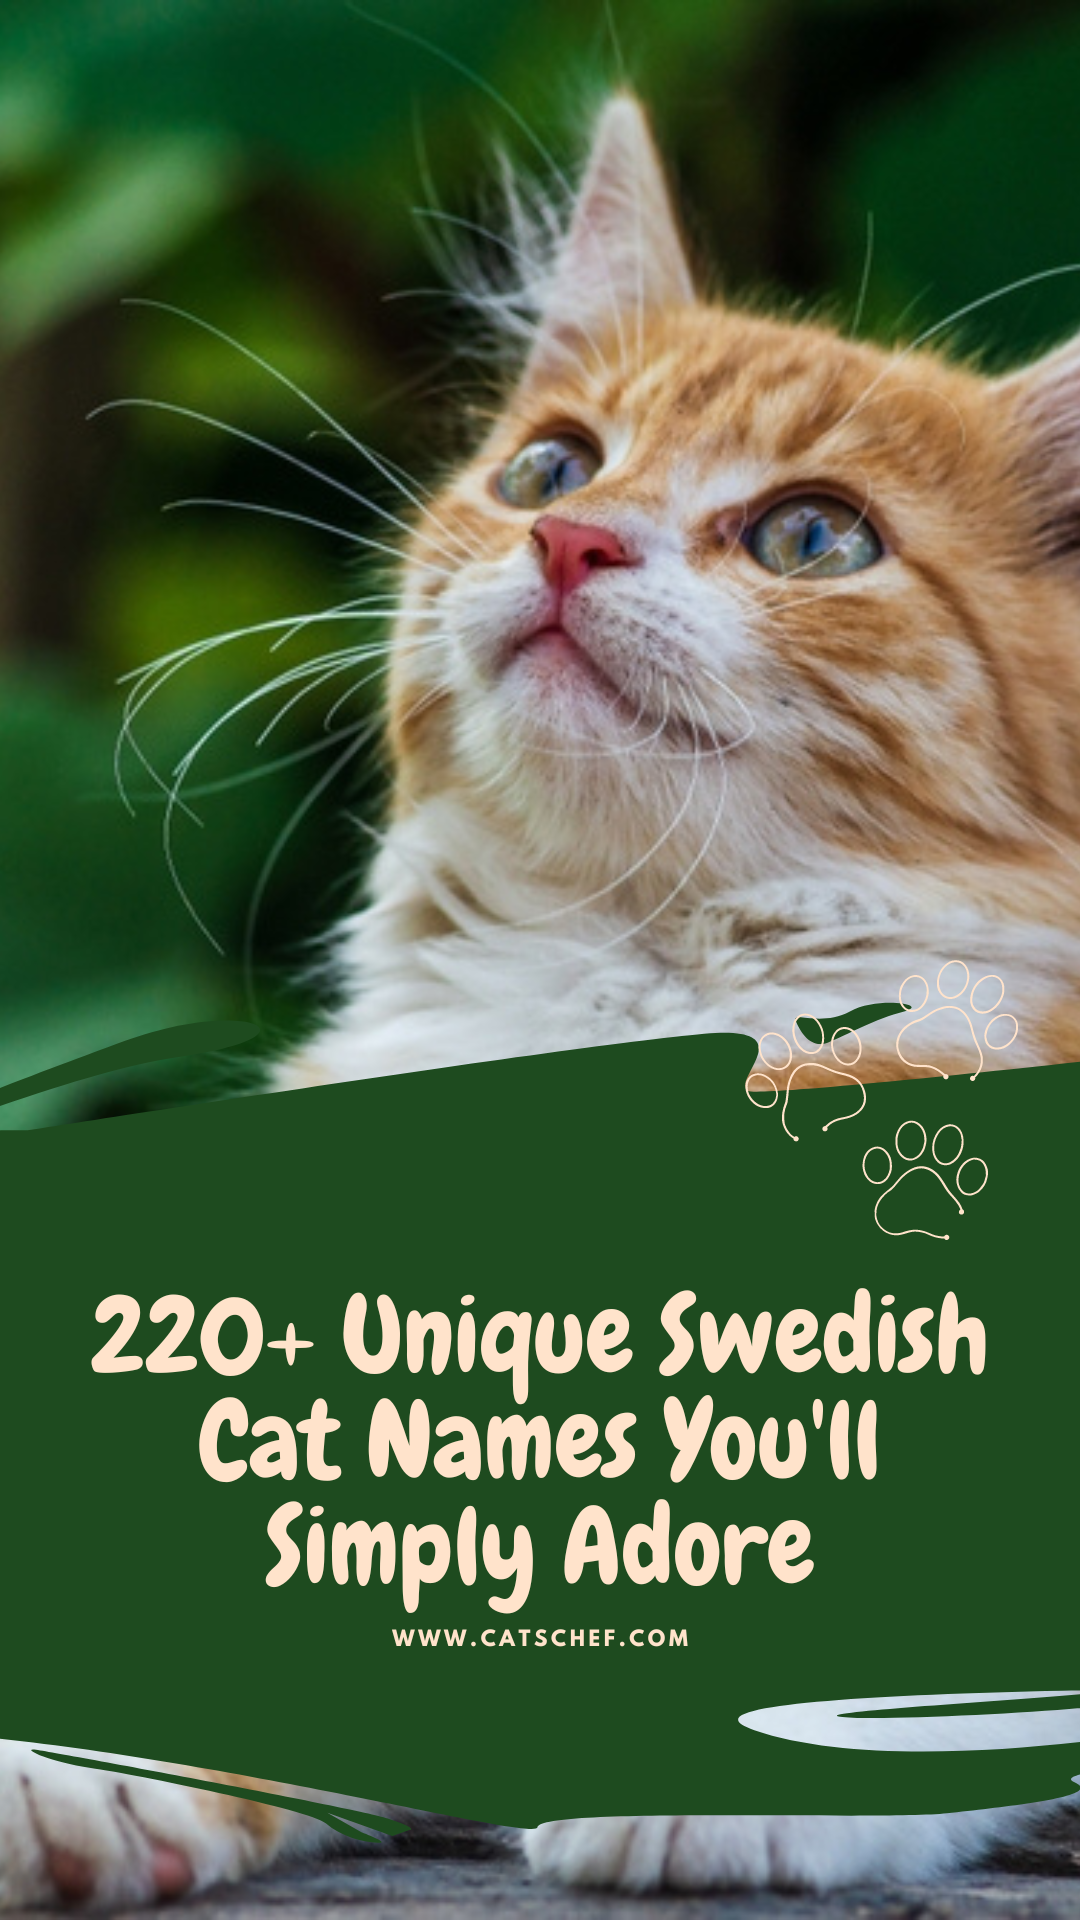 220+ Unique Swedish Cat Names You'll Simply Adore